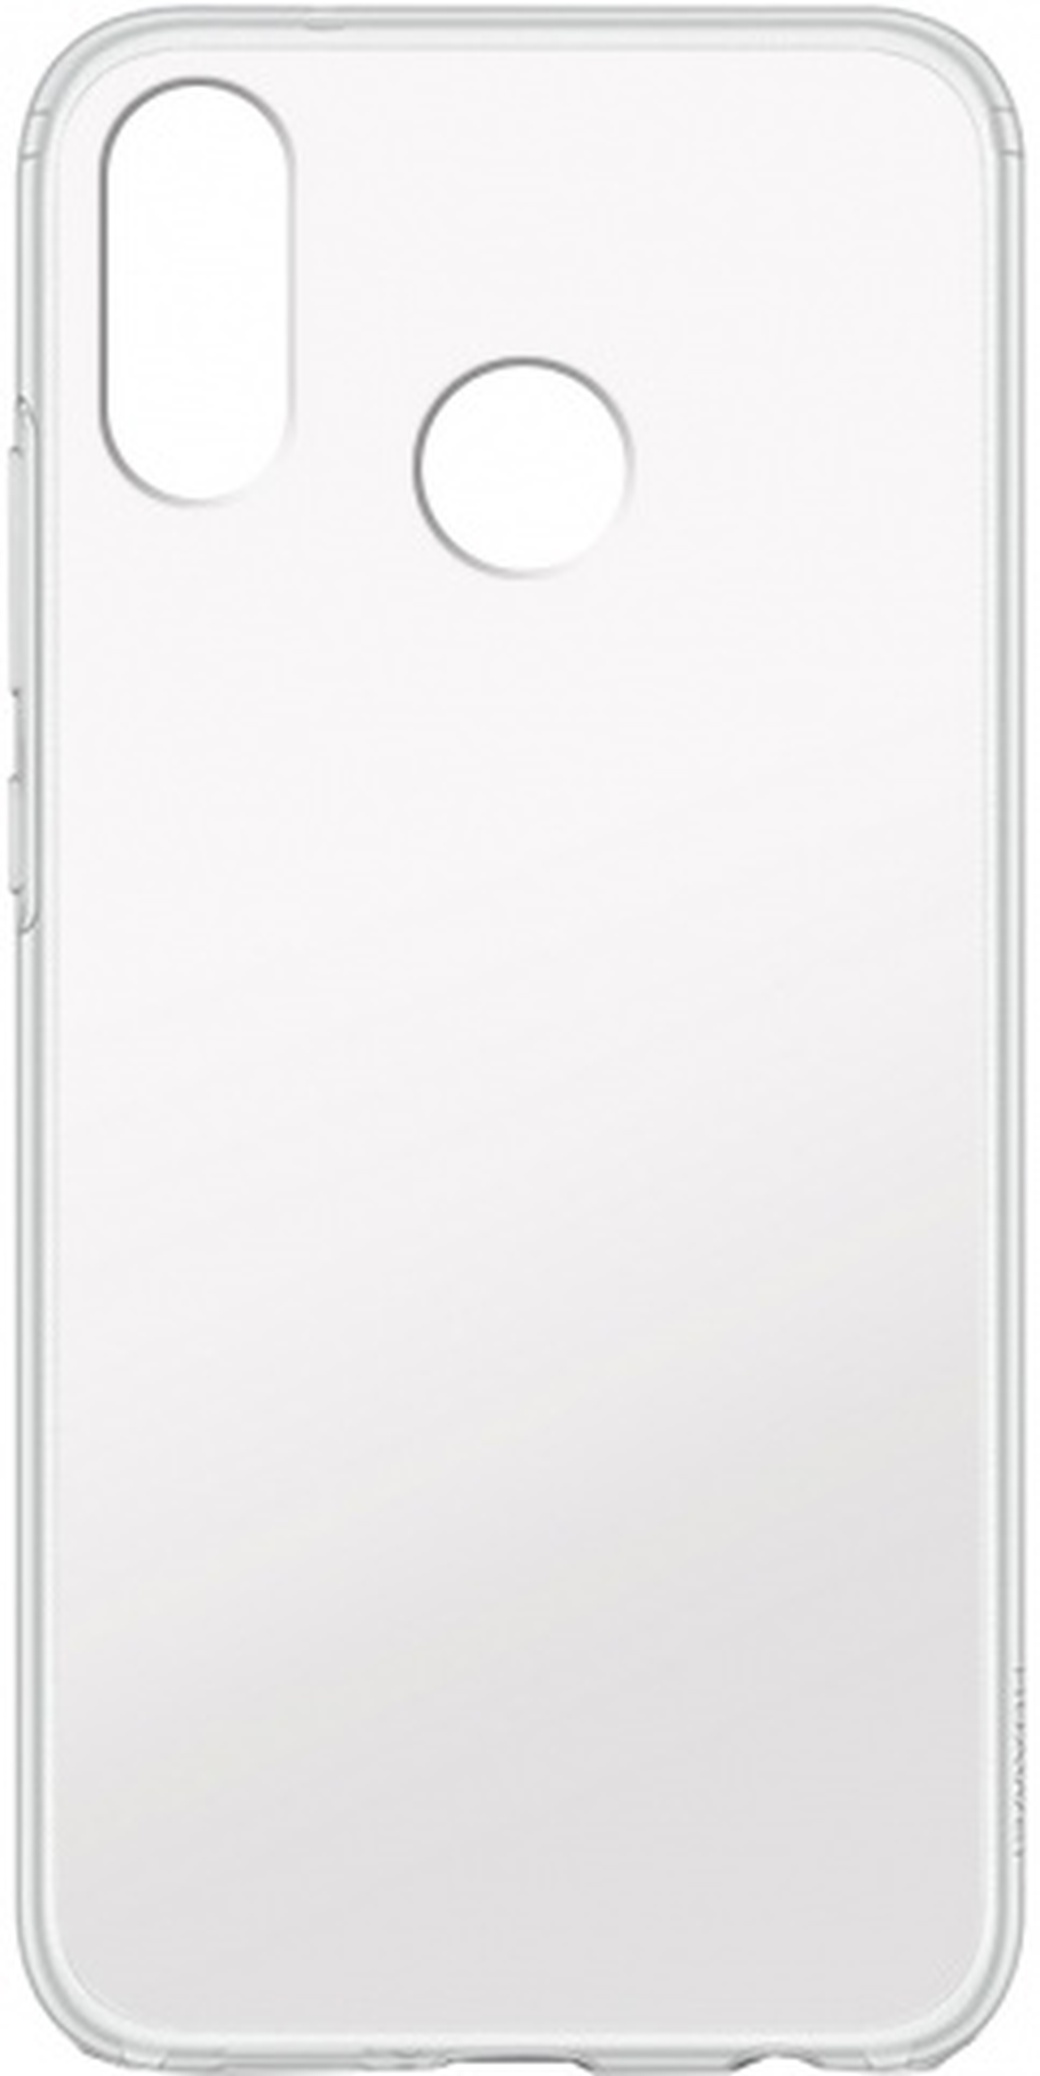 Чехол для смартфона Huawei P20 lite силиконовый прозрачный, BoraSCO фото